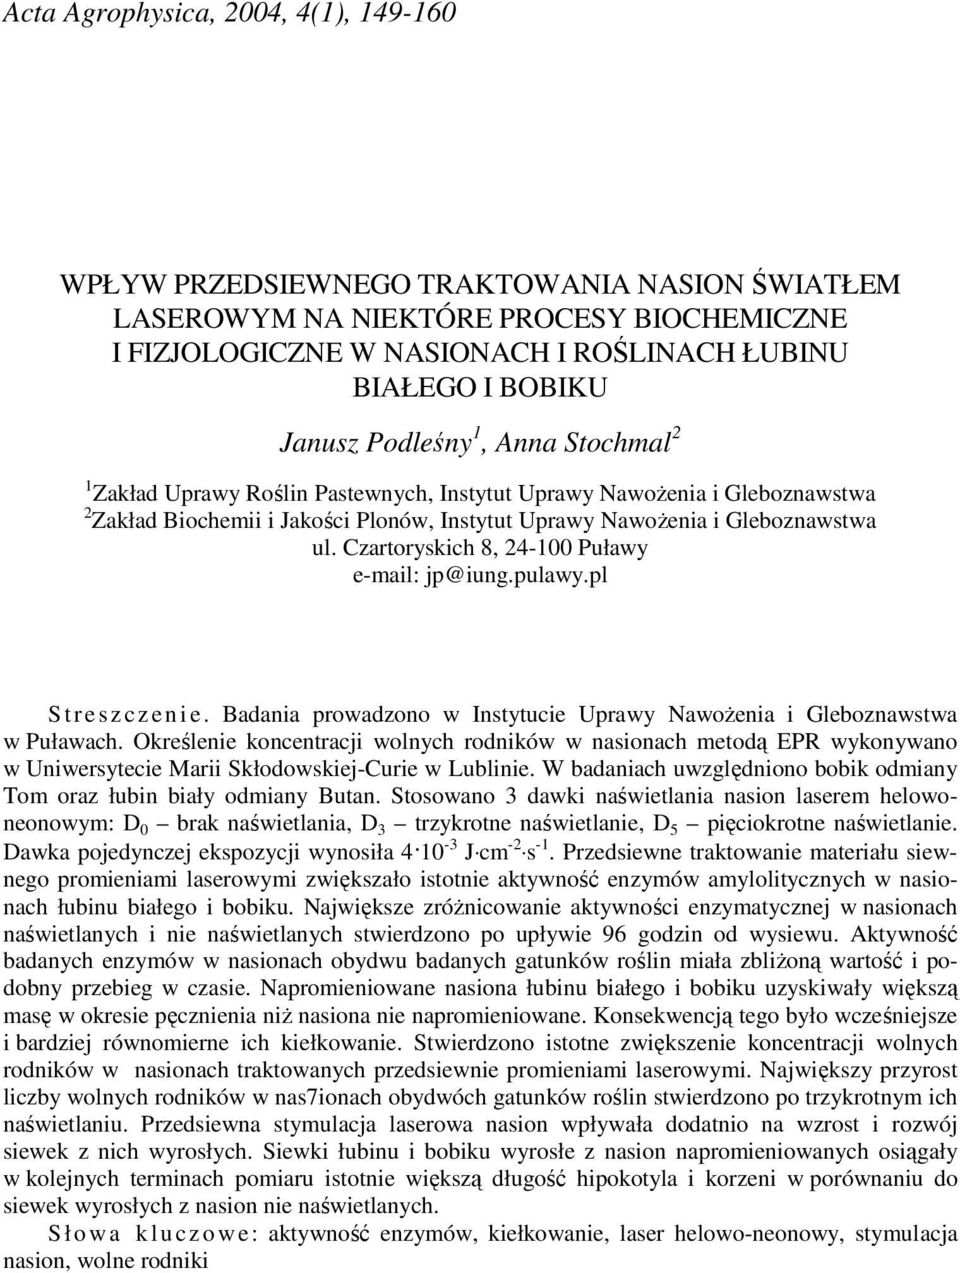 Czartoryskich 8, 24-100 Puławy e-mail: jp@iung.pulawy.pl S t r e s z c z e n i e. Badania prowadzono w Instytucie Uprawy NawoŜenia i Gleboznawstwa w Puławach.